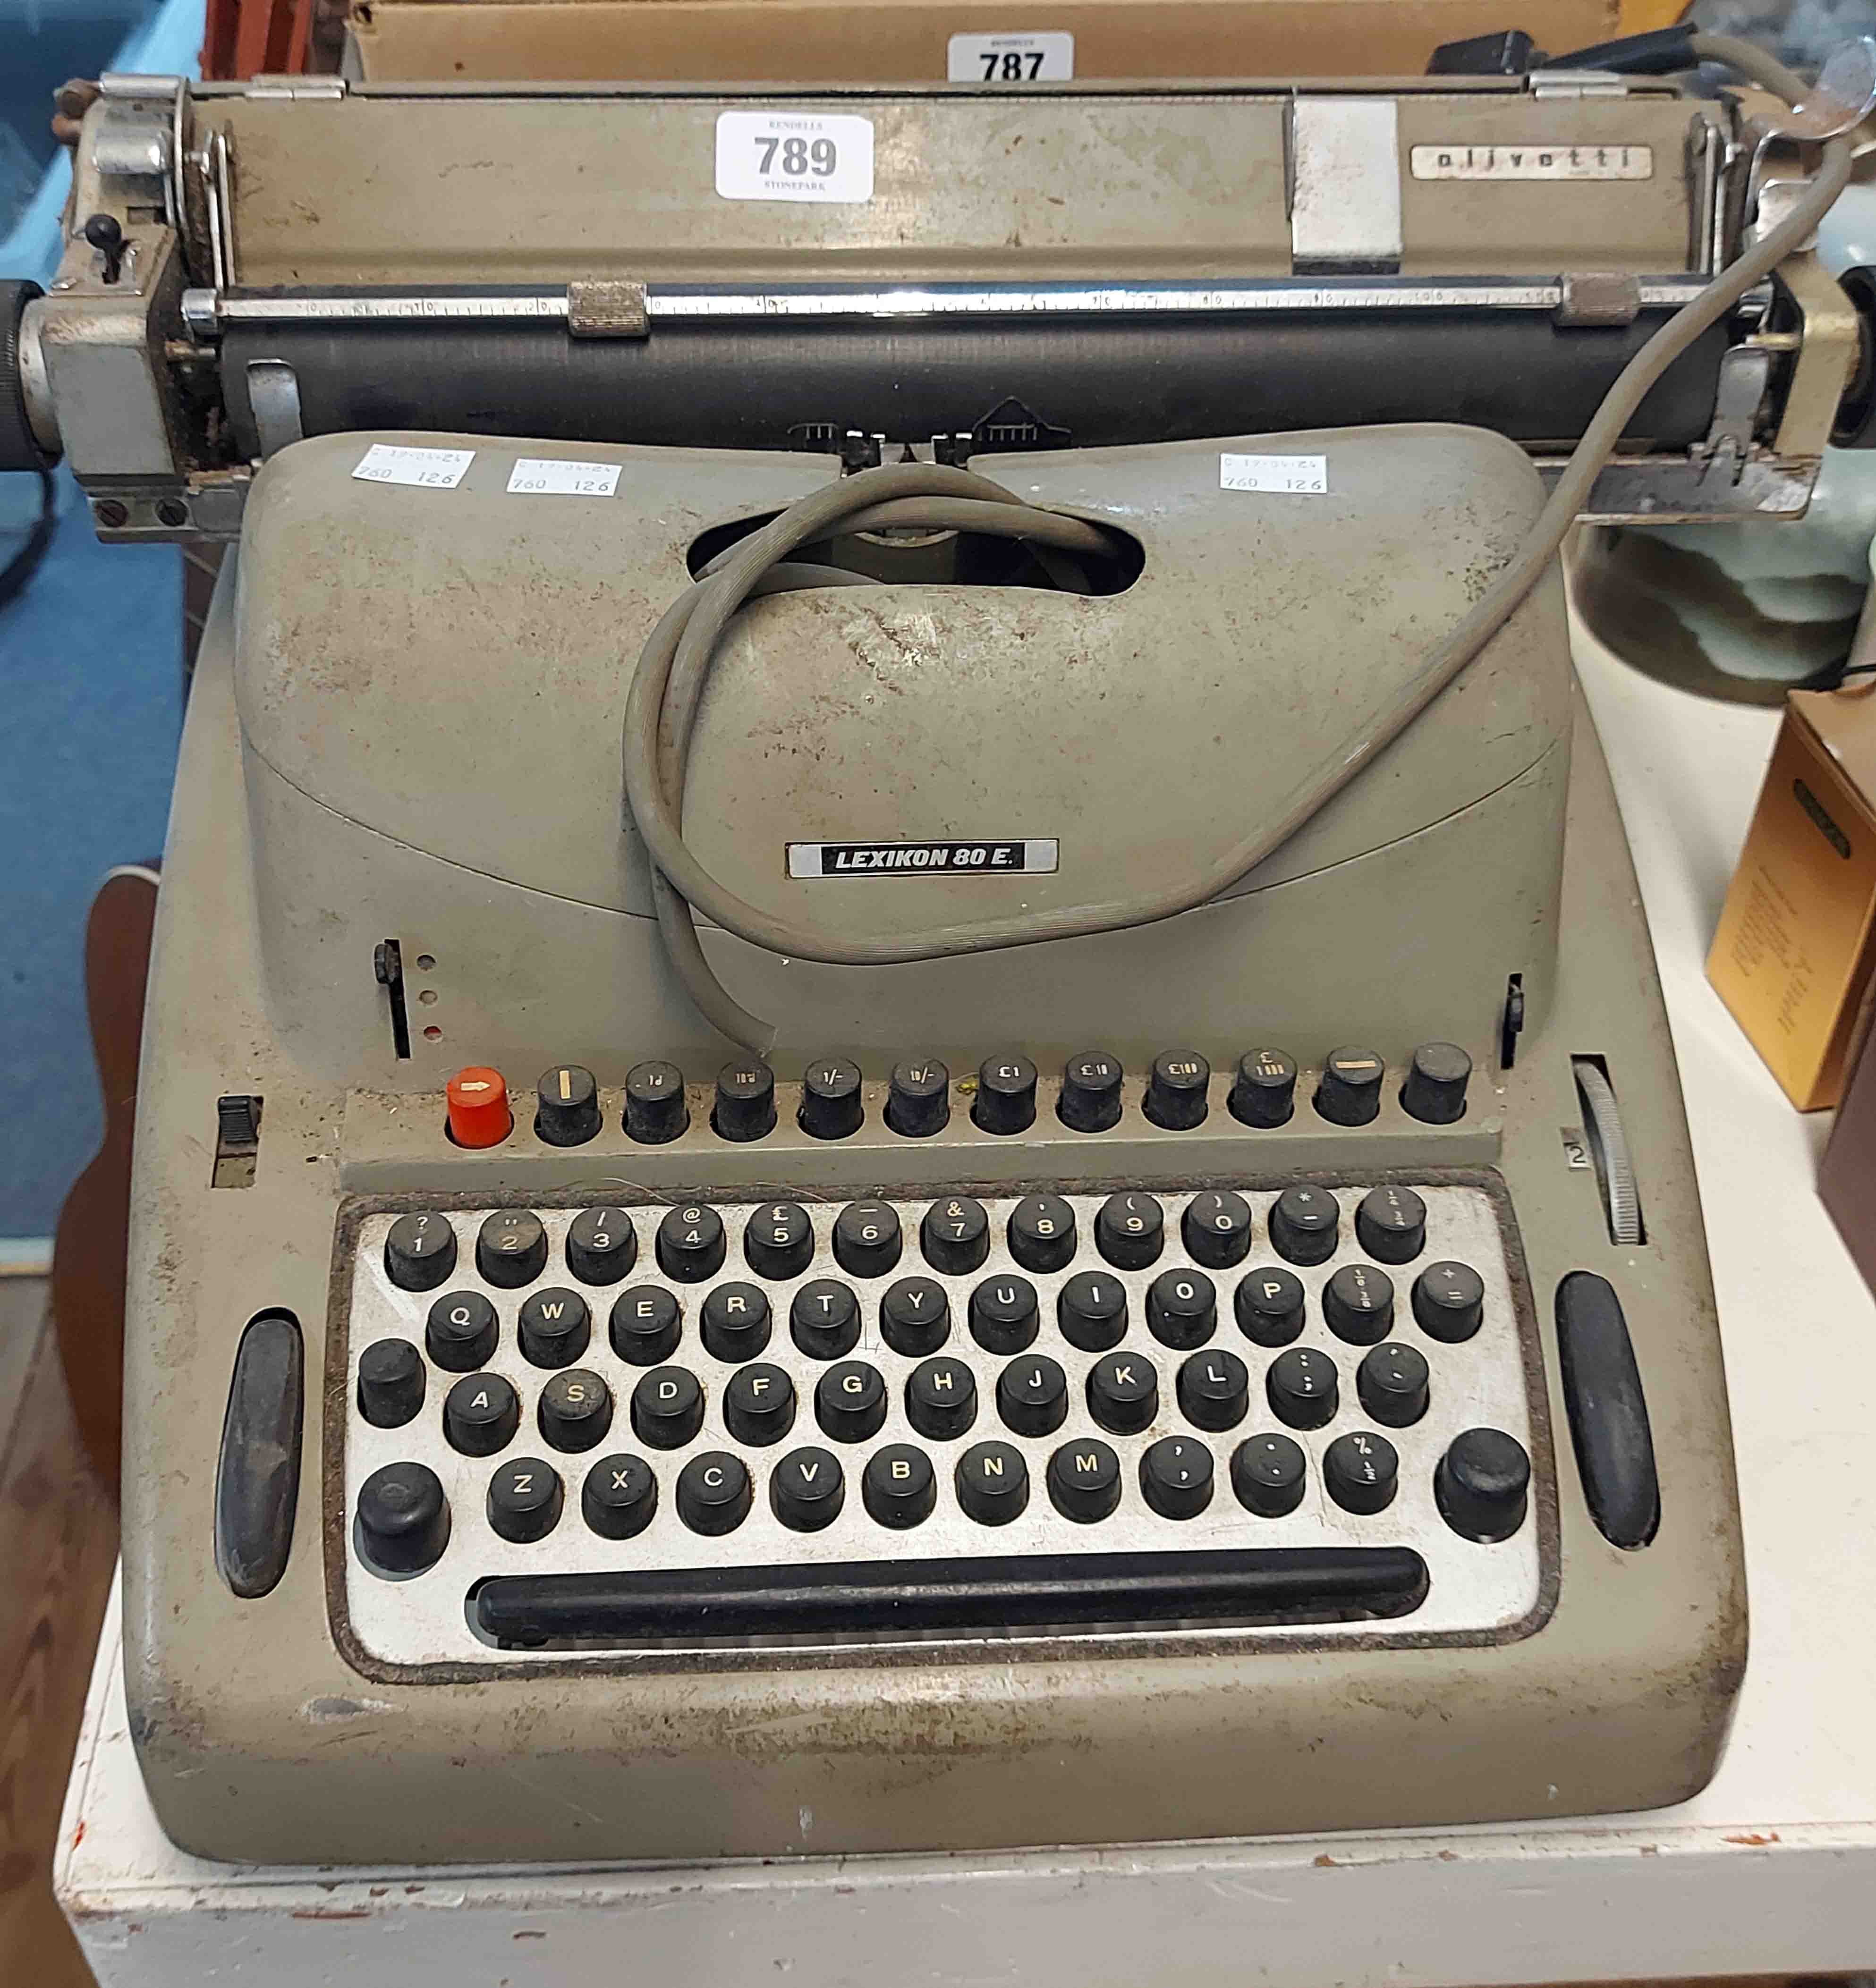 A vintage Lexikon 80 E typewriter